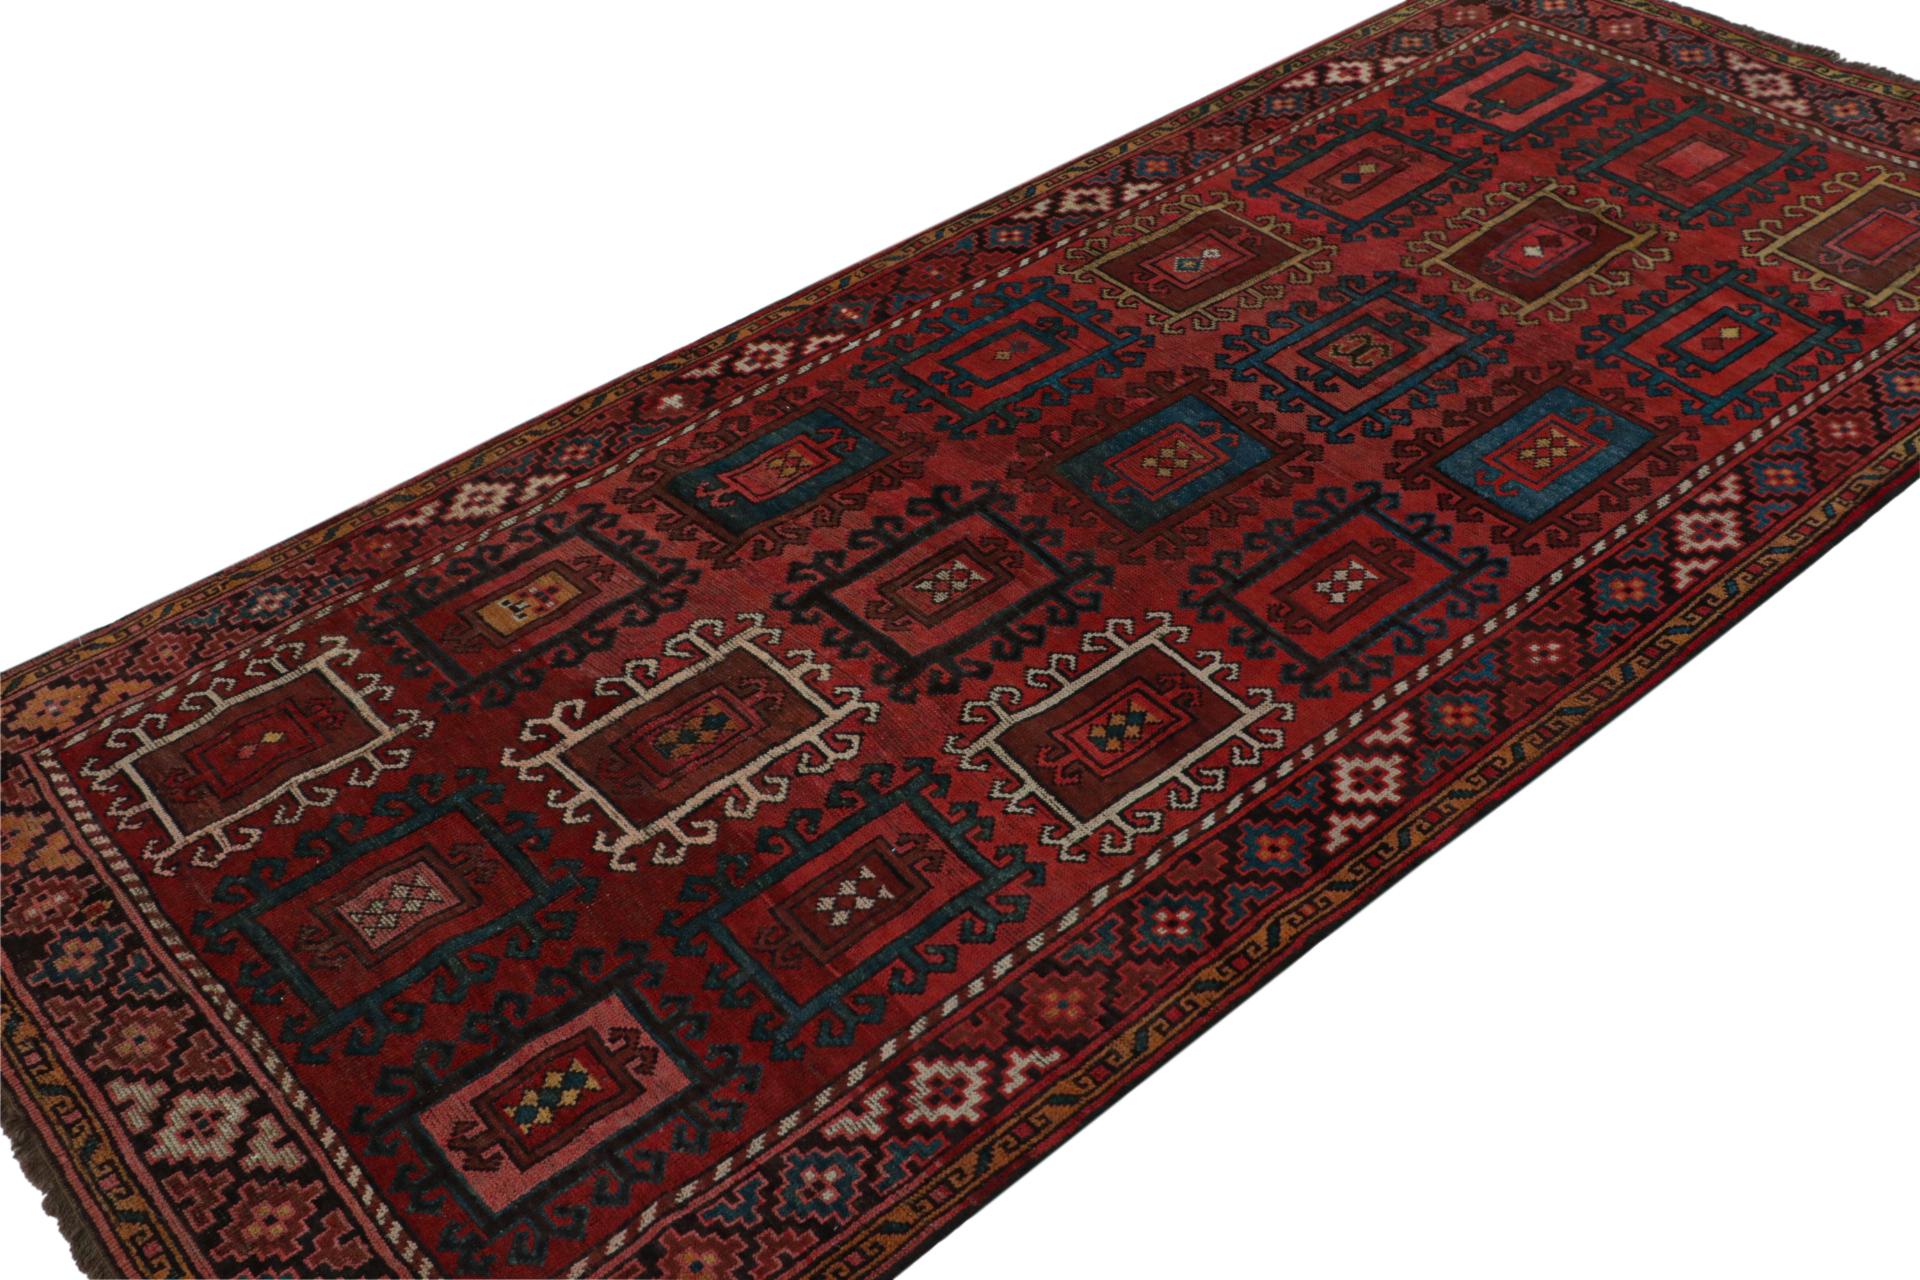 Dieser handgeknüpfte türkische Teppich in der Größe 4x9 zeichnet sich durch ein traditionelles Design mit geometrischen Mustern in maximierten Versionen der reichen, altehrwürdigen Farben aus. 

Über das Design: 

Kenner werden dieses traditionelle